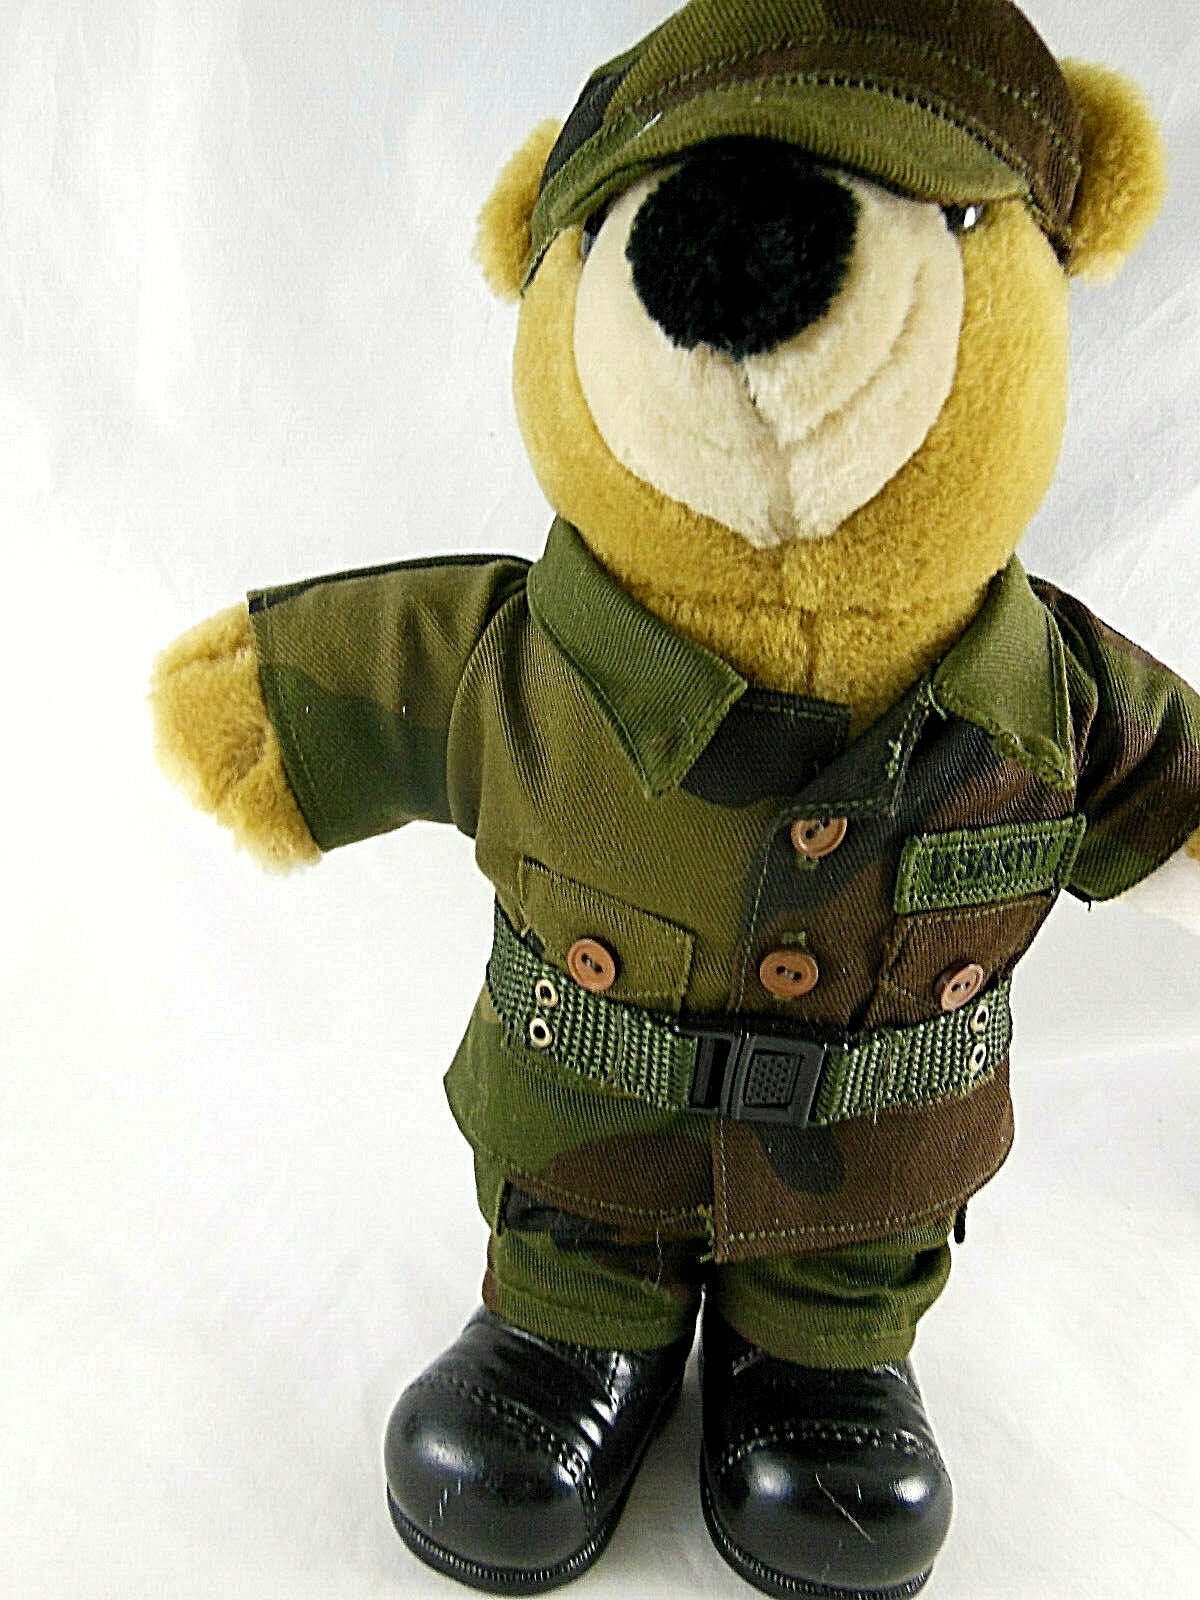 US ARMY Plush Teddy Bear Force Of America 10" Tall Green Camo uniform